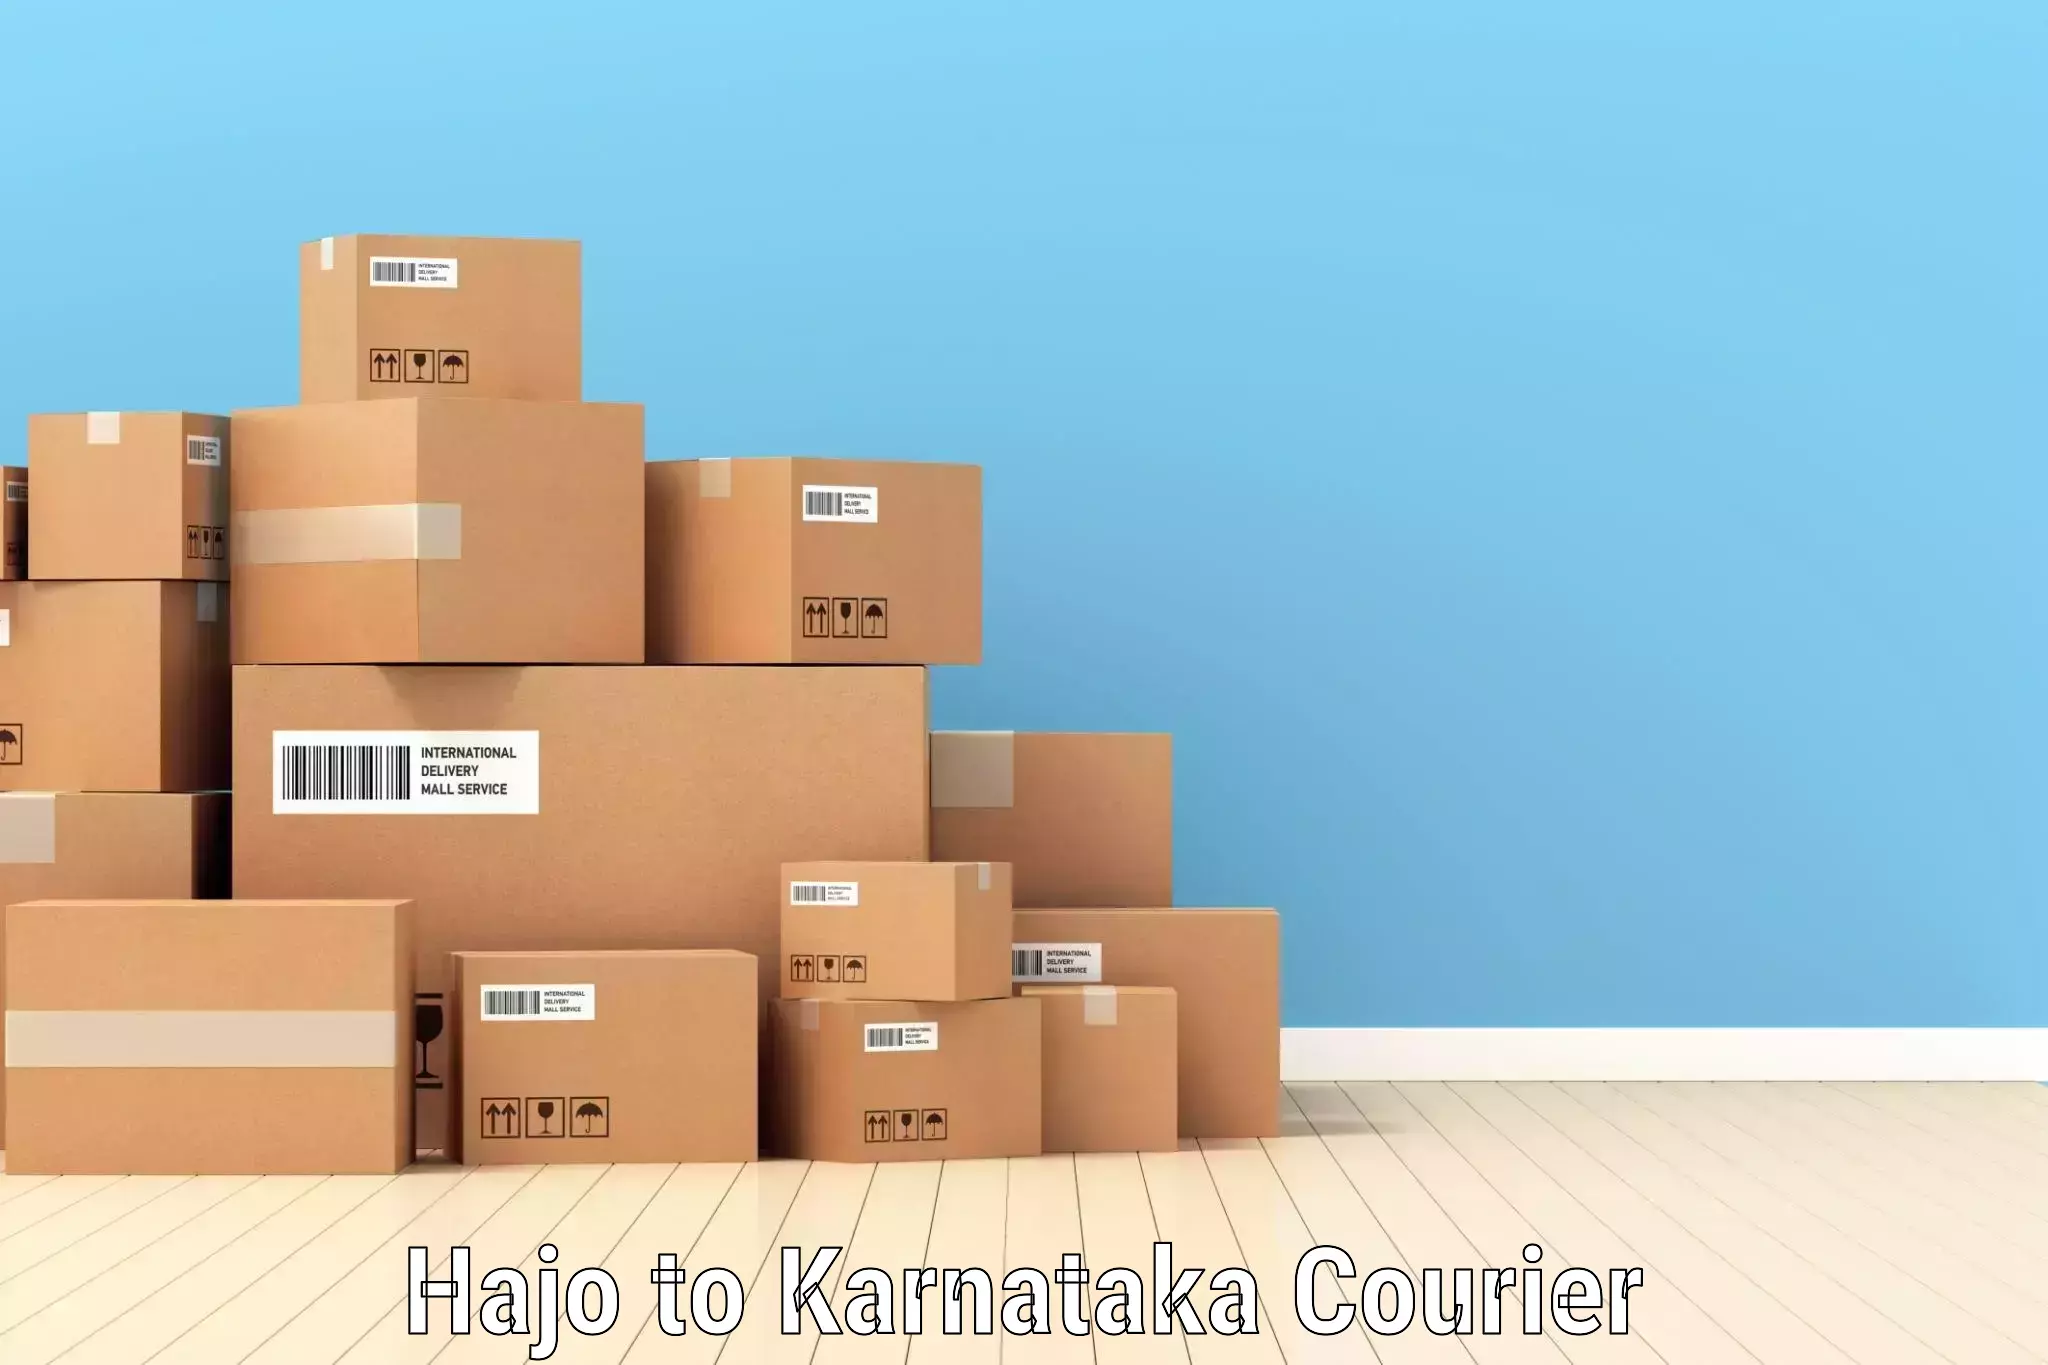 Cargo delivery service Hajo to Karnataka